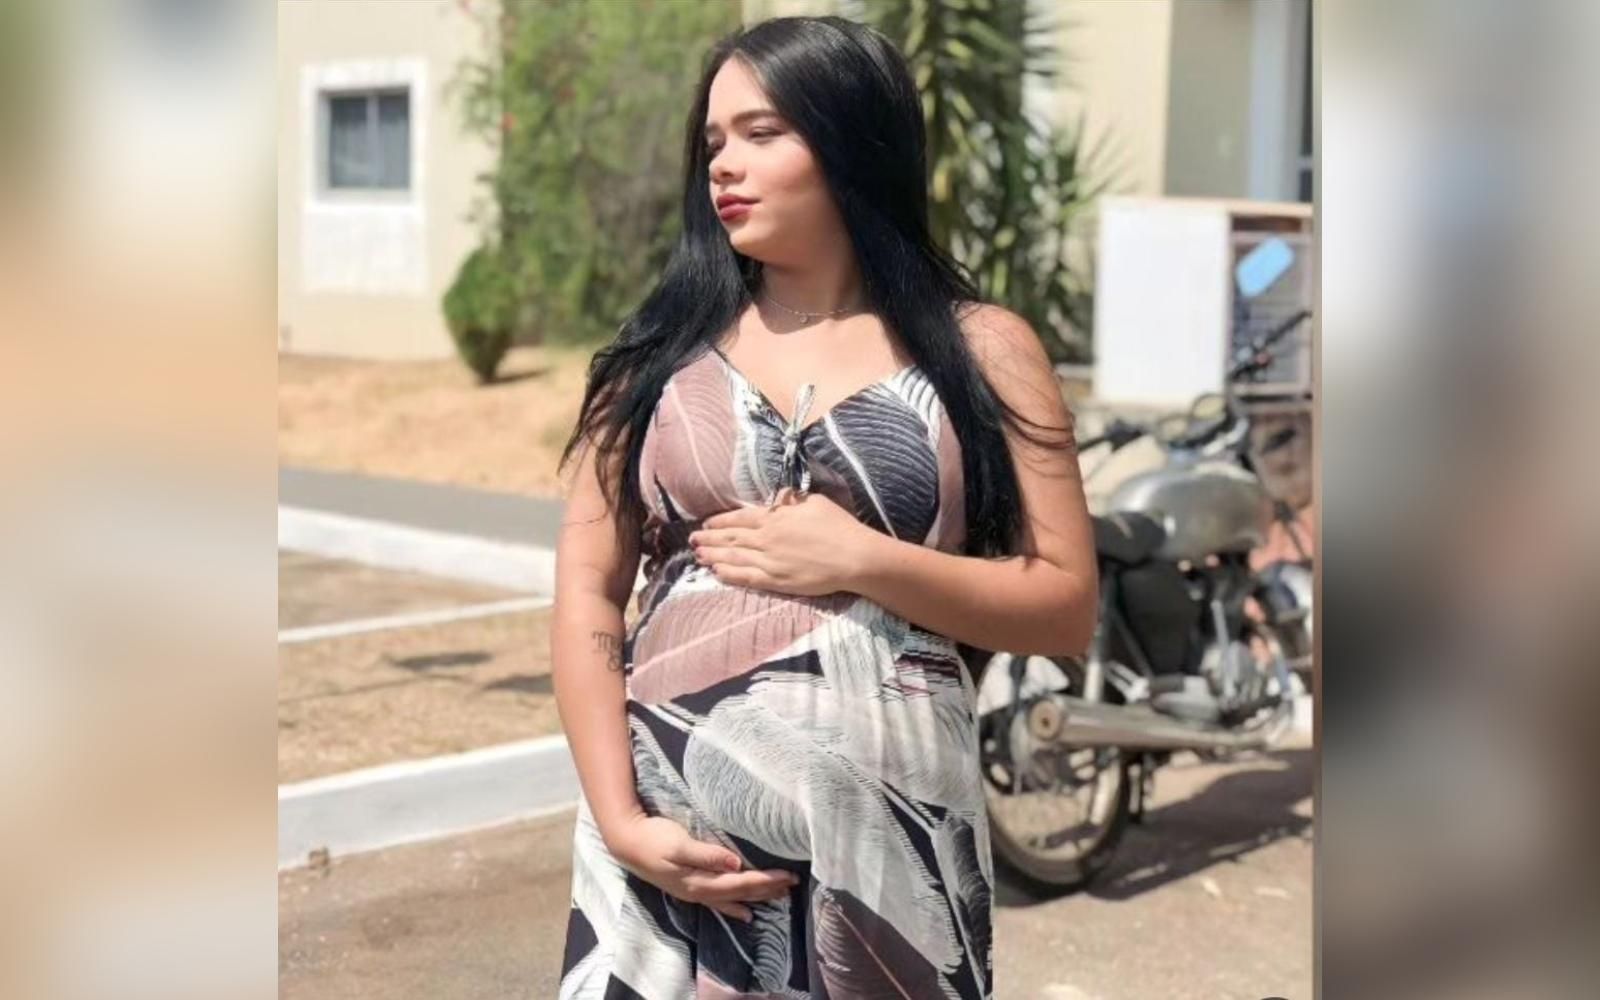 Família denuncia perda de bebê por negligência em maternidade de Goiânia